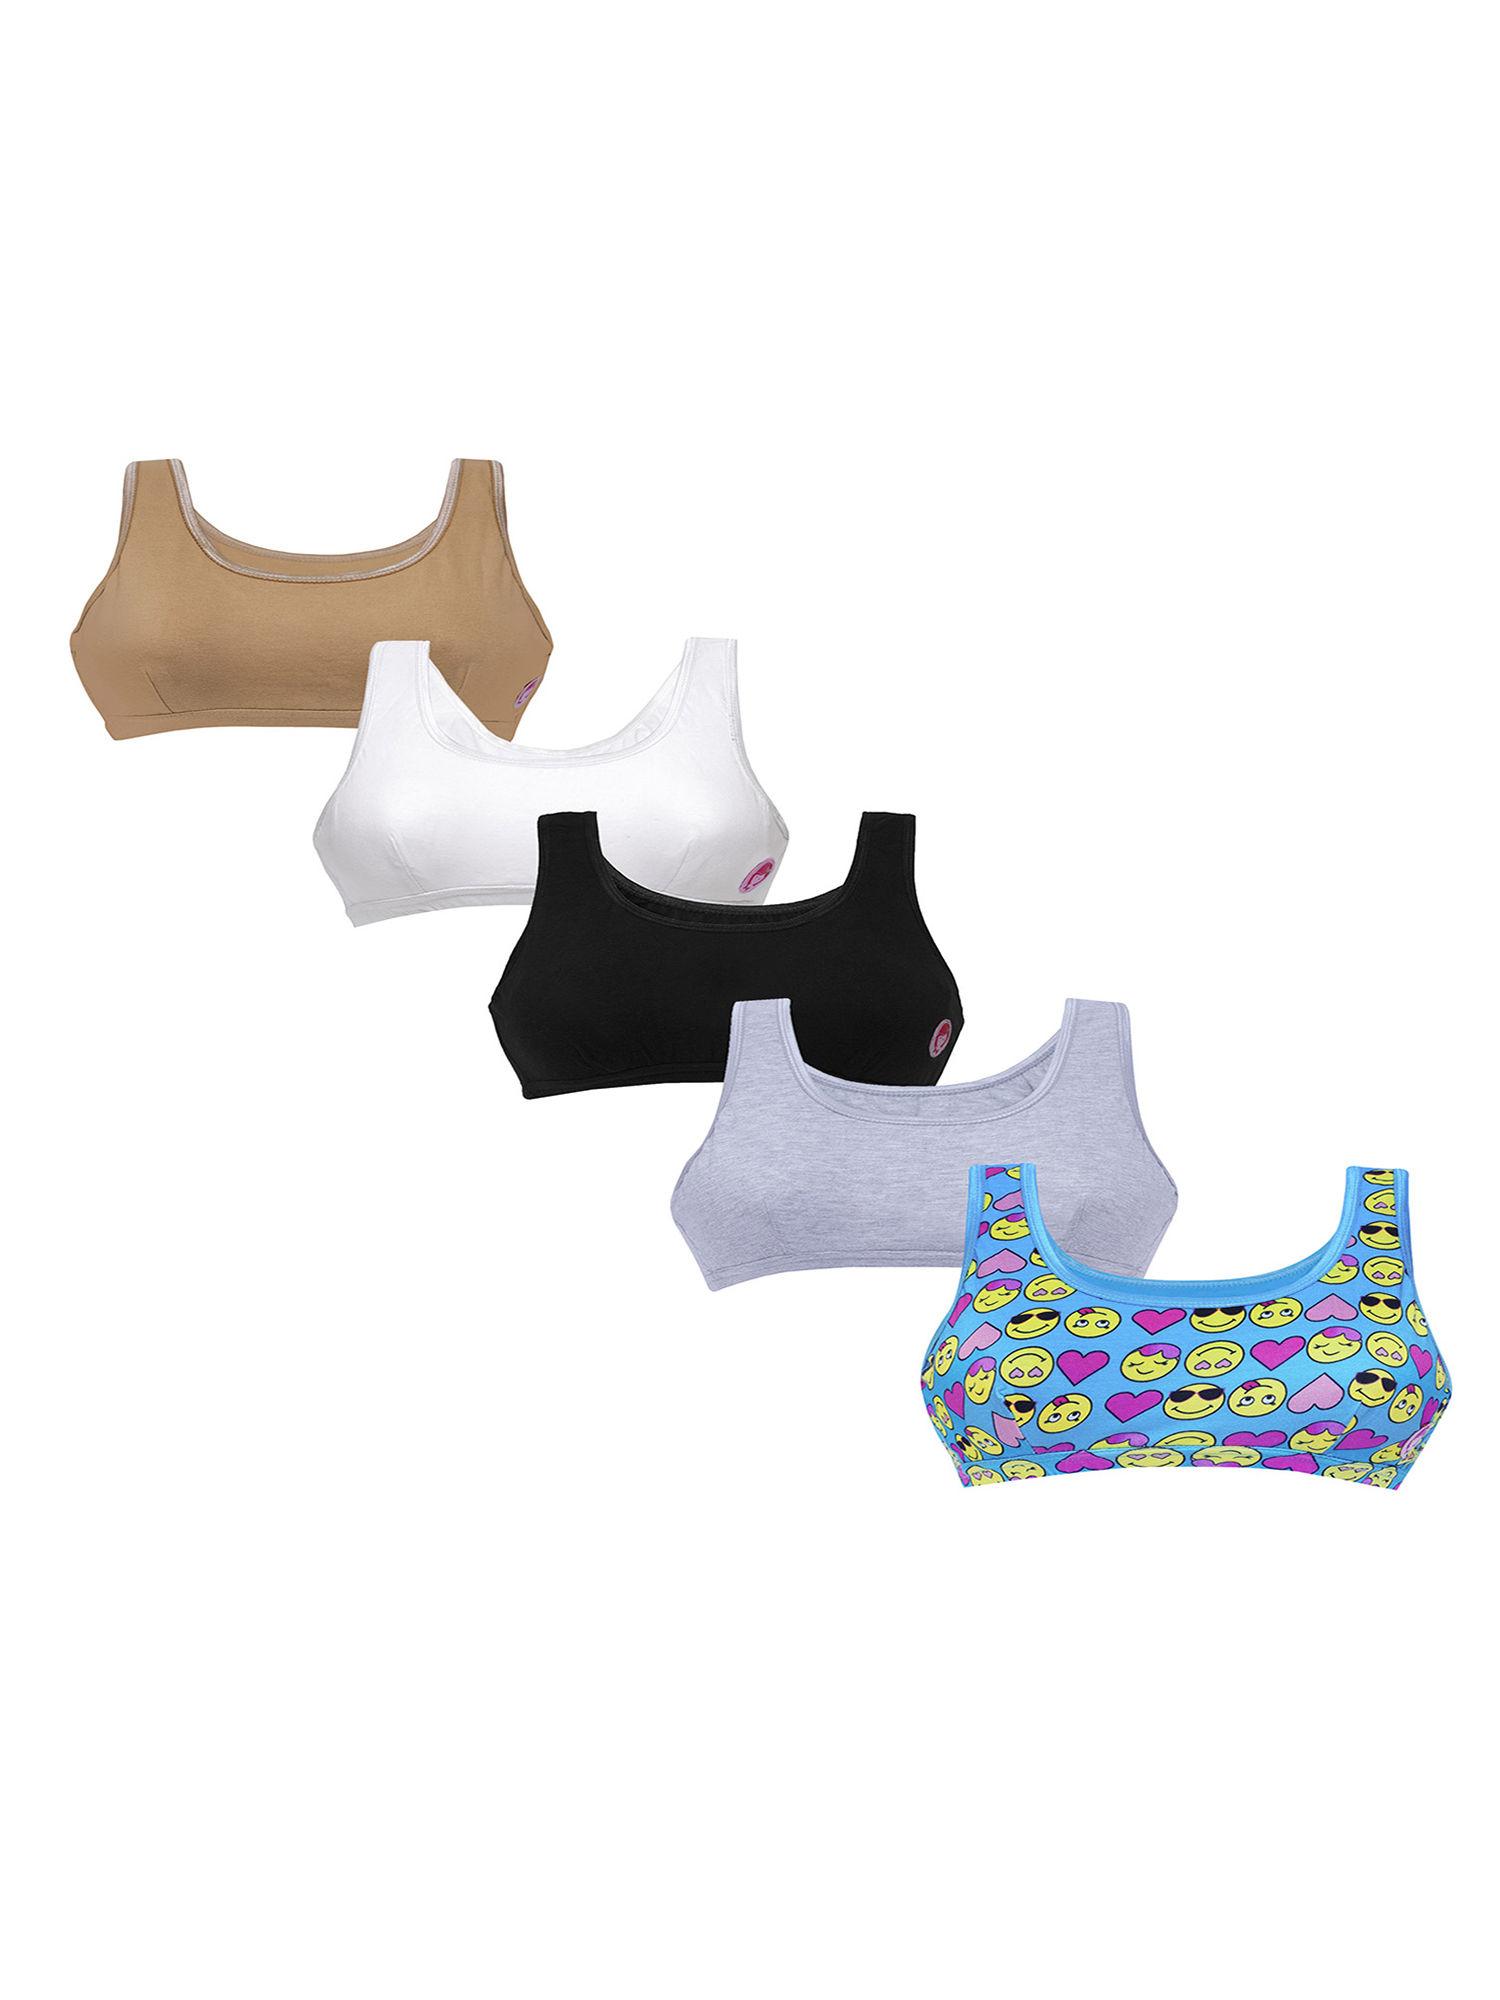 set of 5 smiley print & 4 basic colors beginner bras for girls